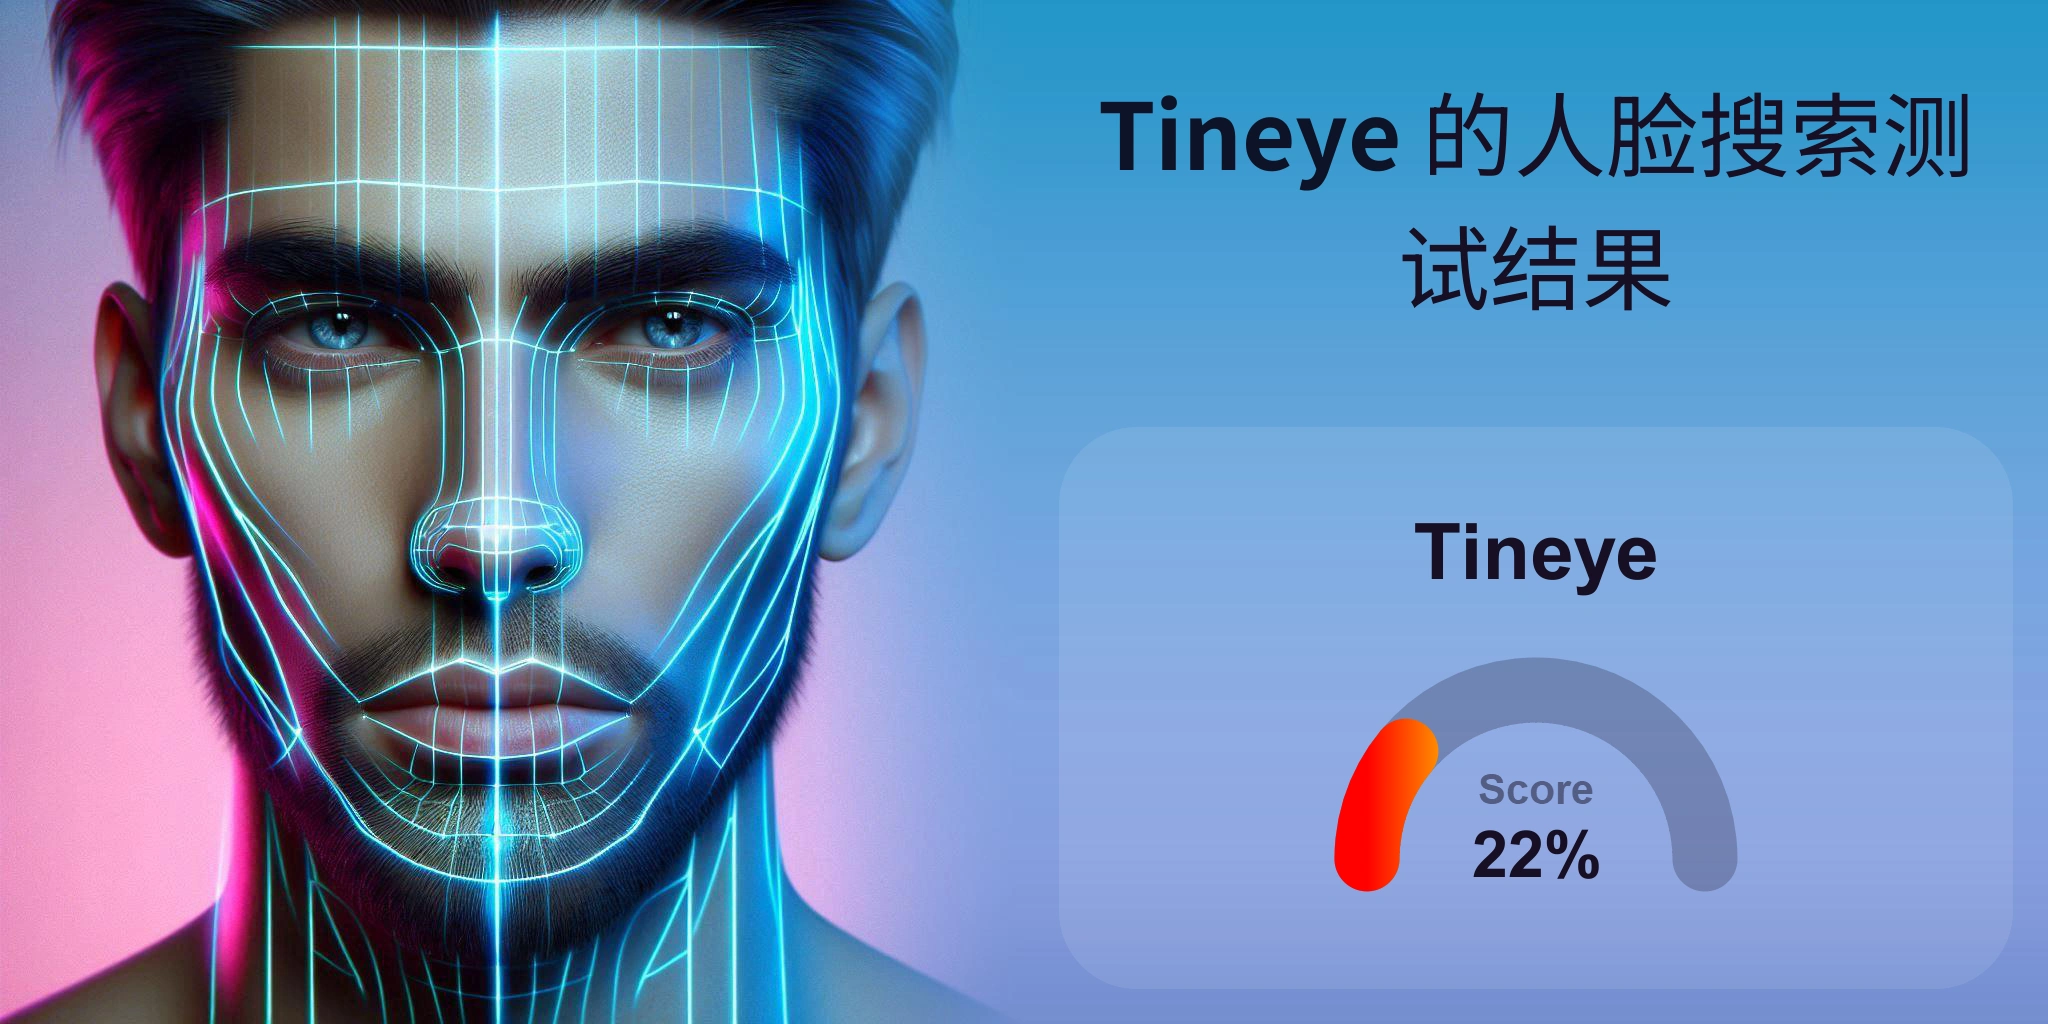 Tineye 是人脸搜索的最佳选择吗？